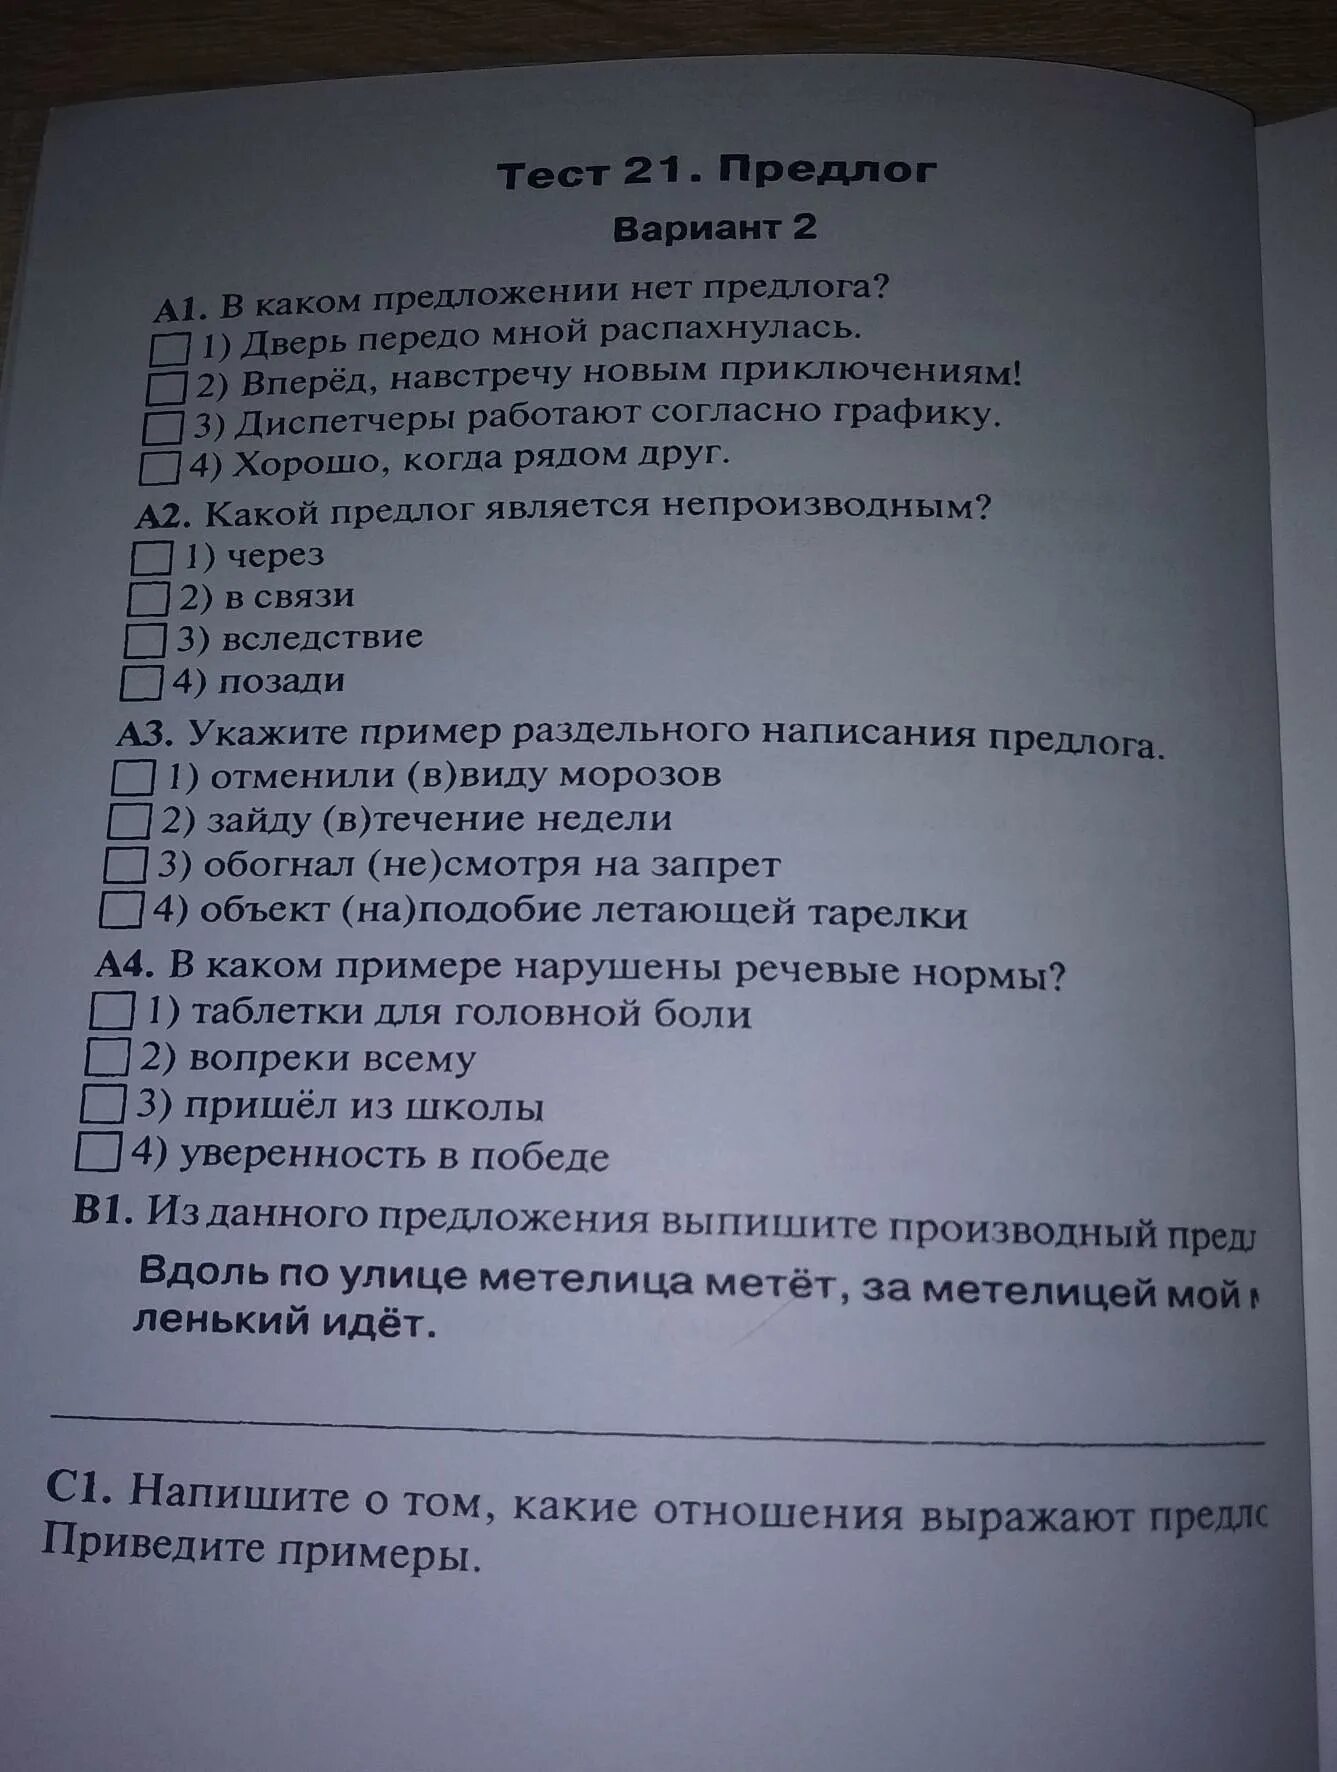 Тест 21 предлог. Тест 21 предлог вариант 2. Работа номер 1 предлог вариант 1. Ответы на тест 21 предлоги по русскому языку.